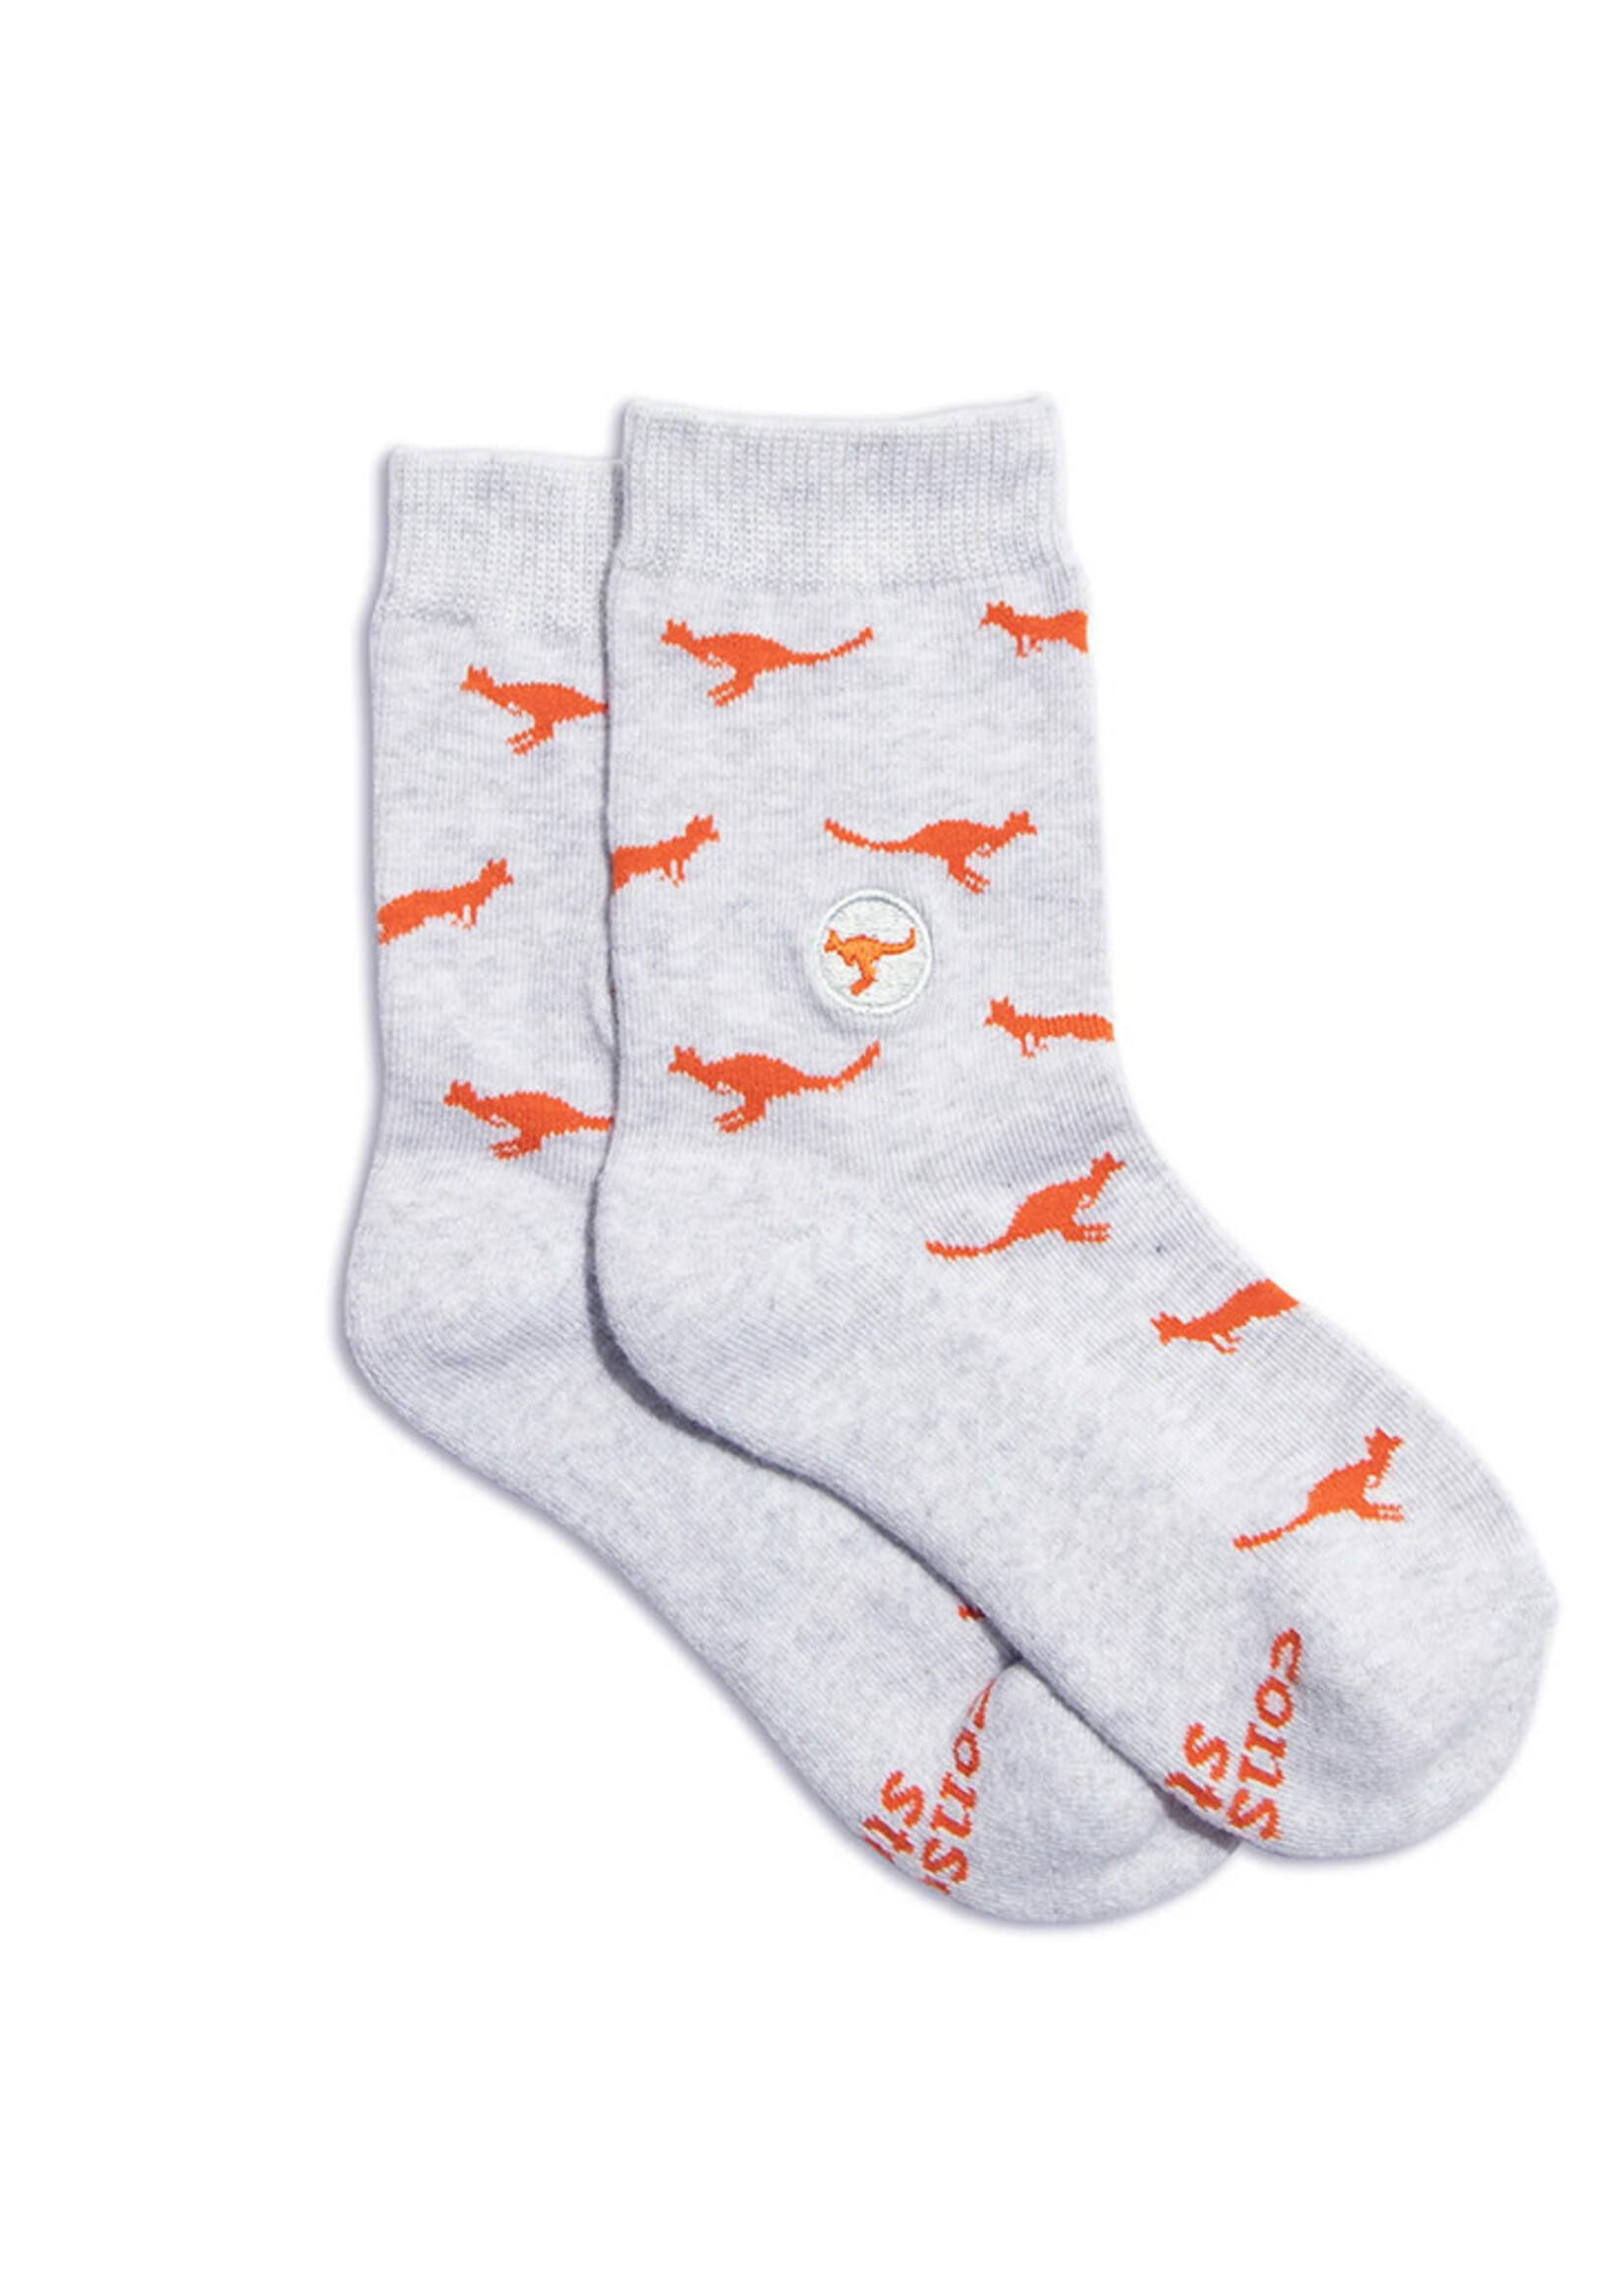 Men's Socks: Shop Online & Save